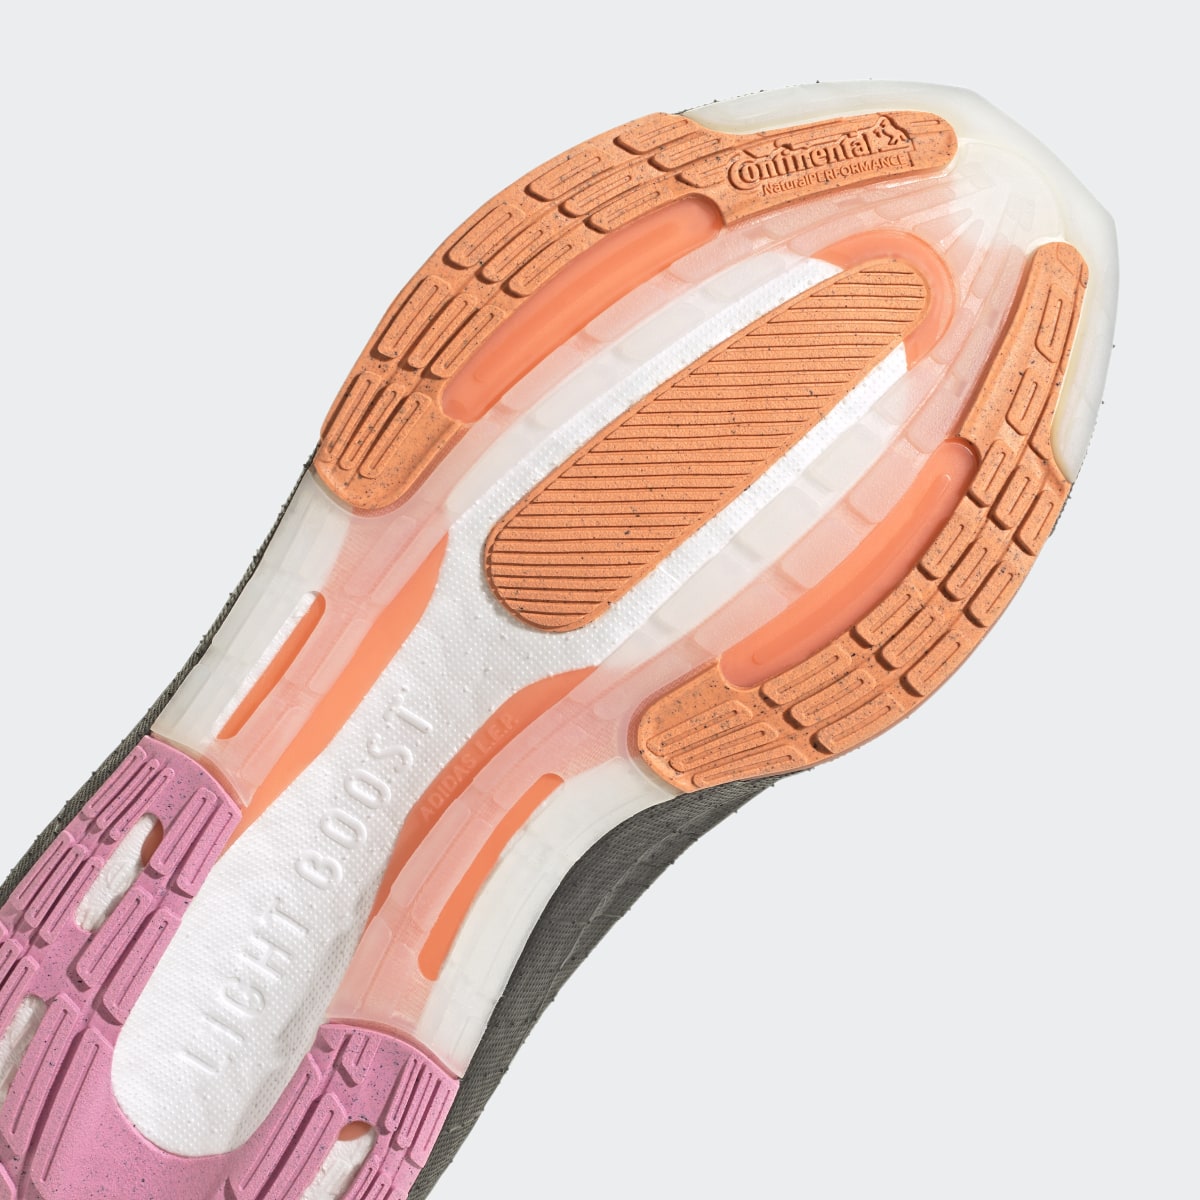 Adidas Ultraboost Light Running Shoes. 9